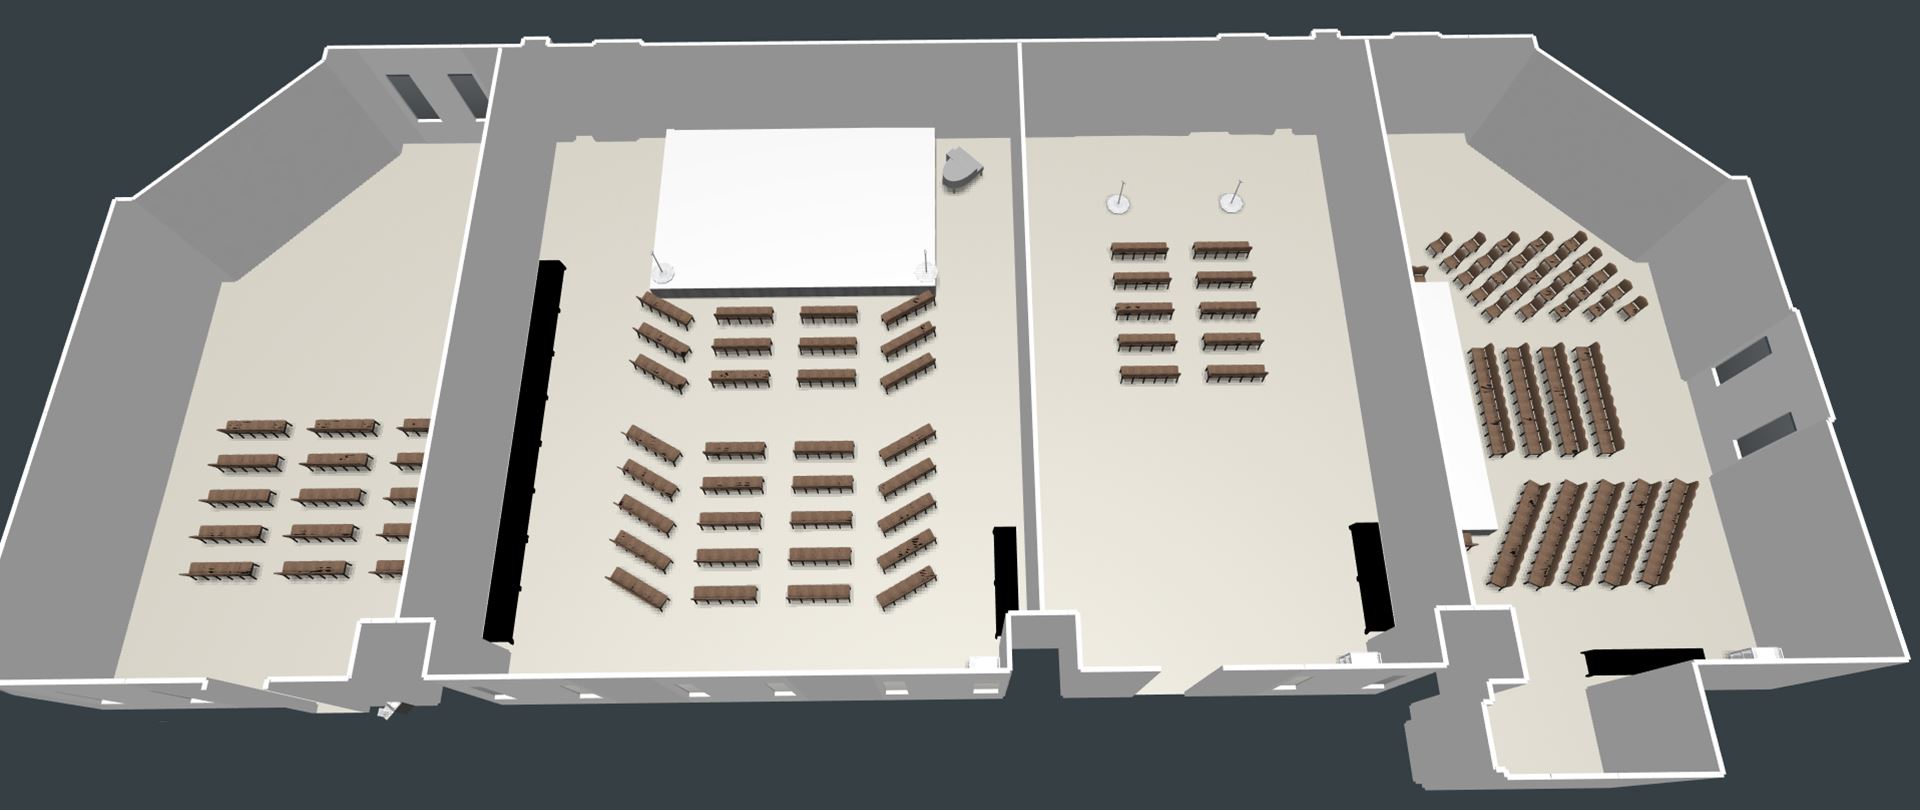 Abilene Civic Center Floor Plan floorplans.click